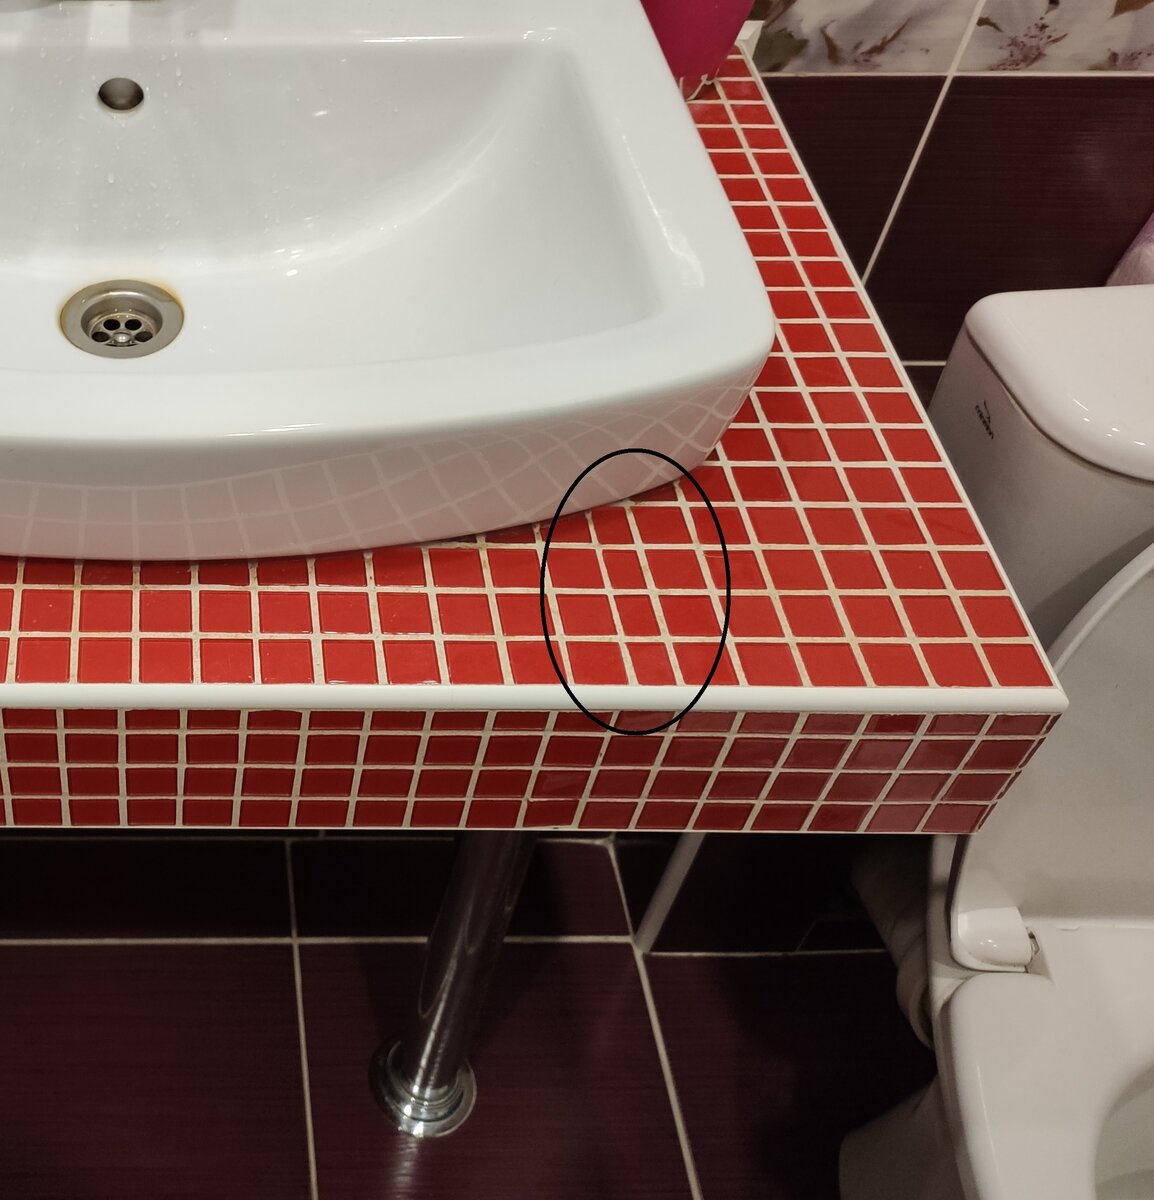 Столешница в ванной из мозаики: особенности, идеи и рекомендации